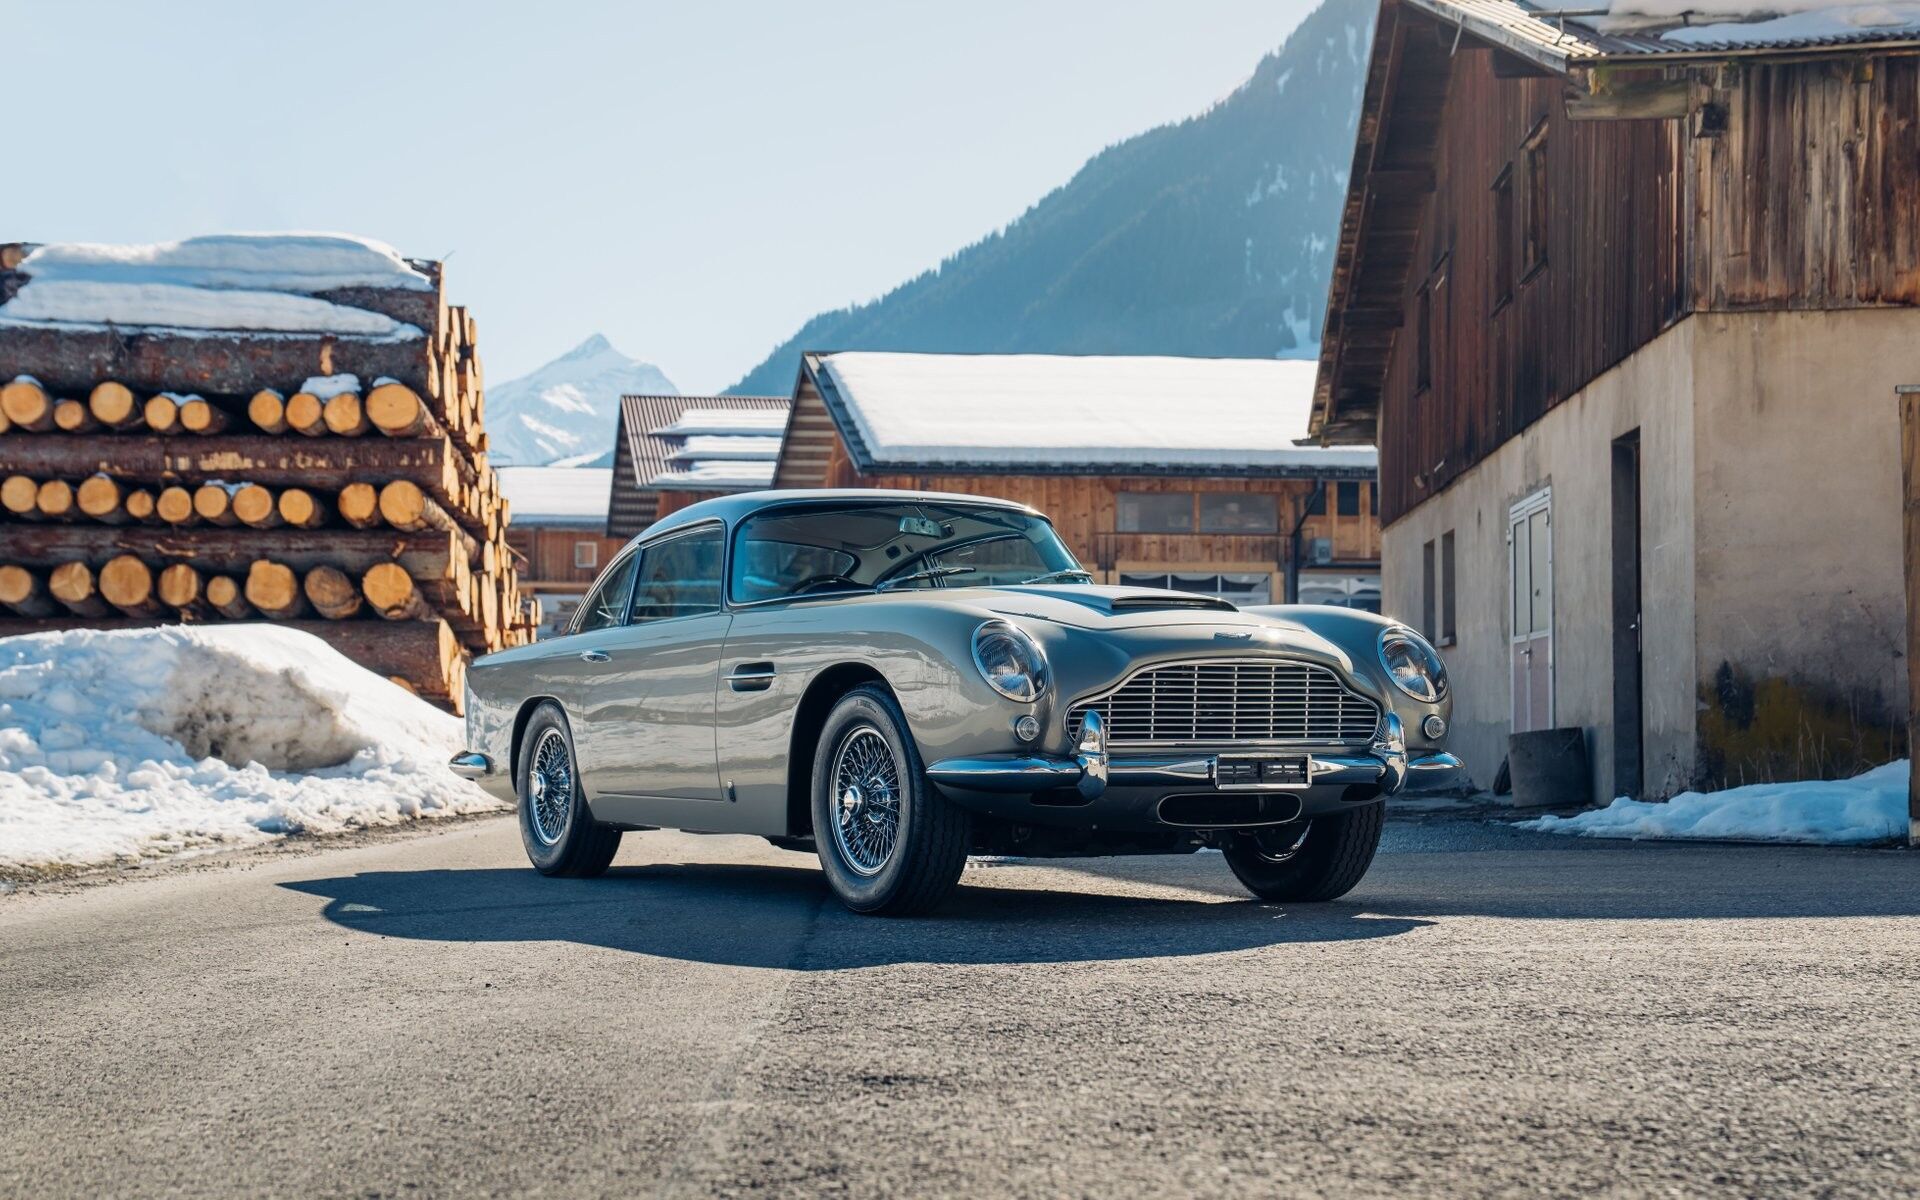 Aston Martin DB5 був придбаний Шоном Коннері у 1964 році і весь цей час перебував у його колекції